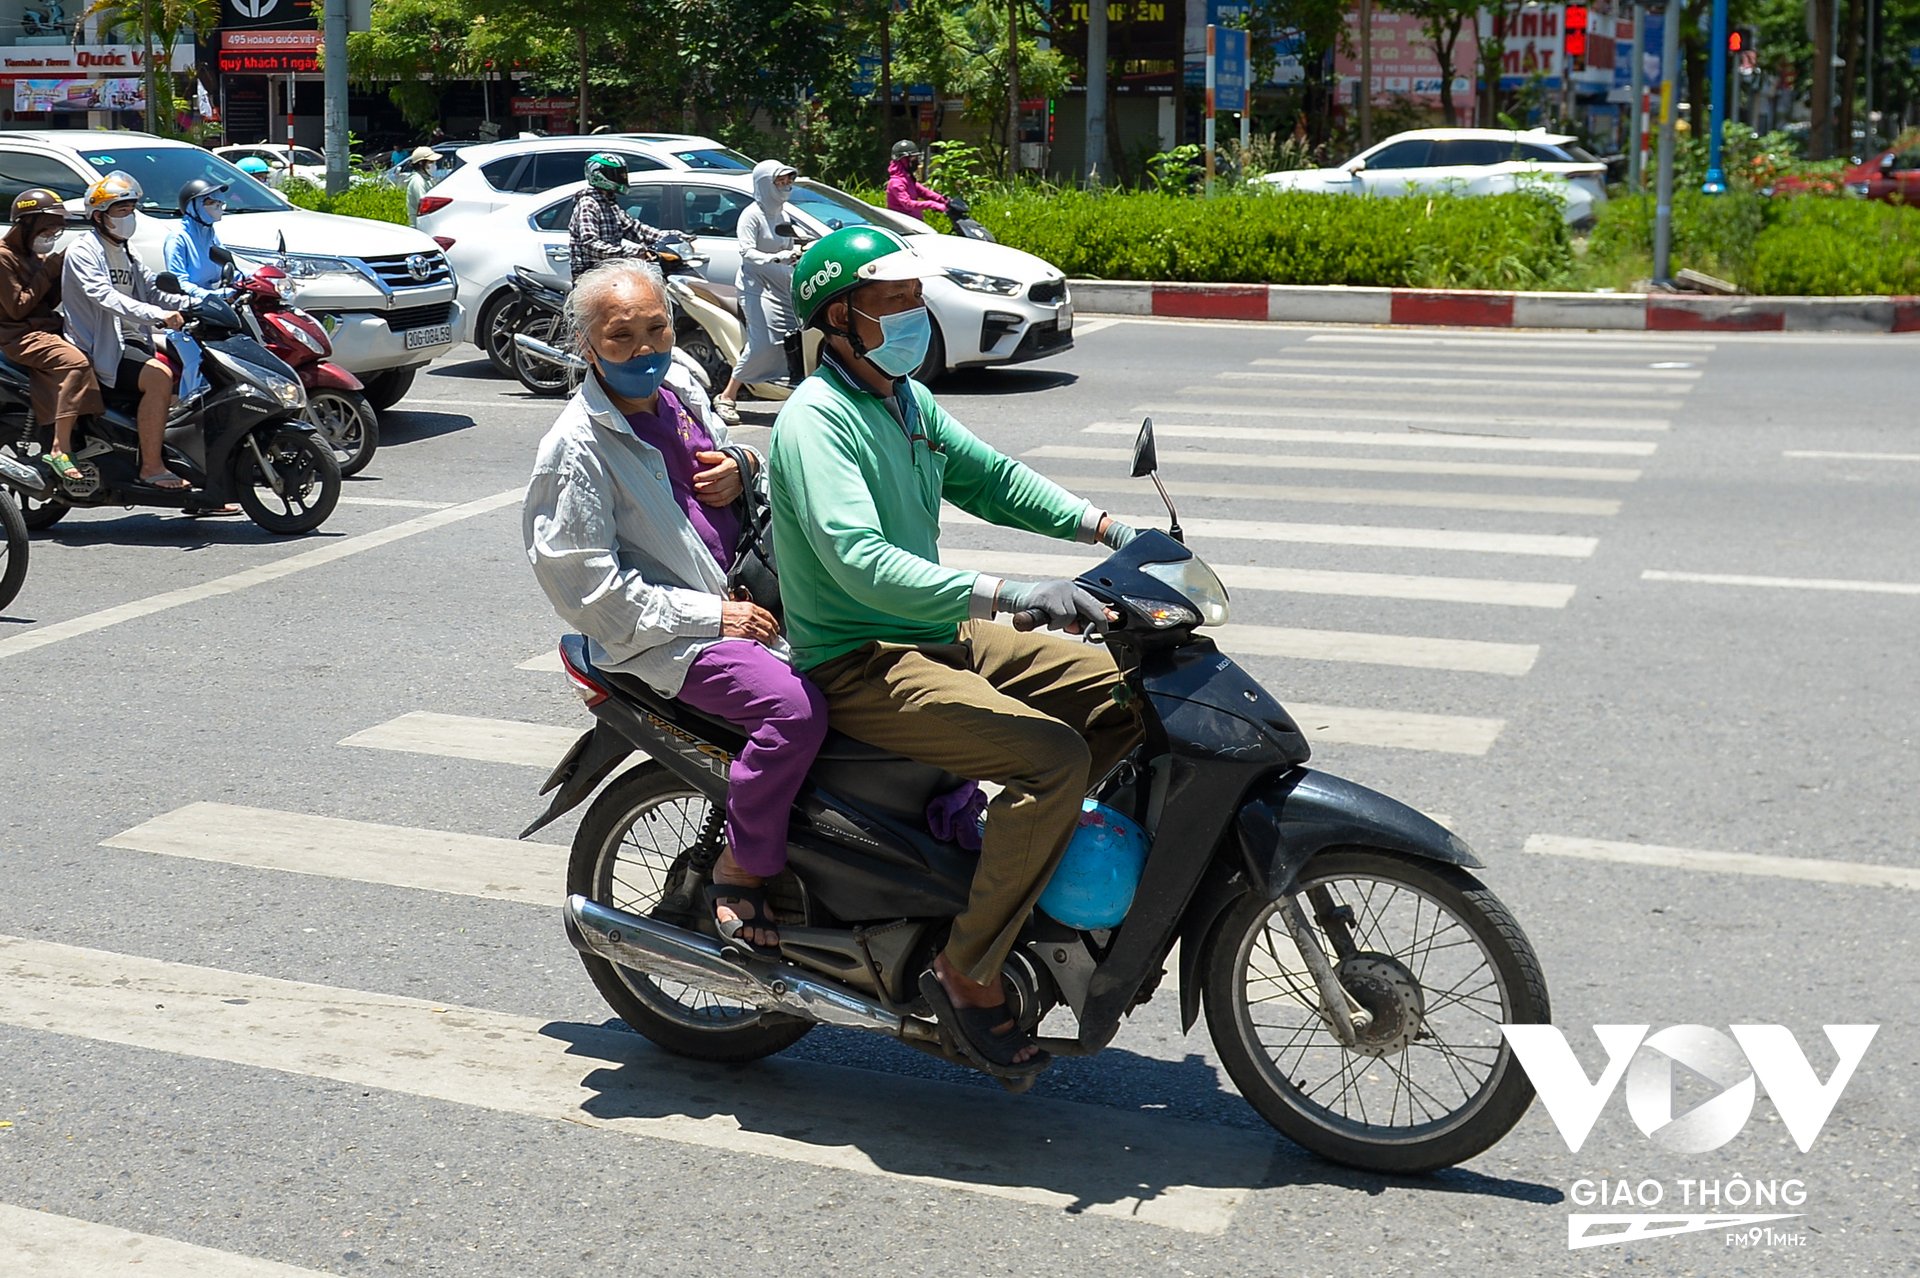 Việc hành khách khi sử dụng xe ôm công nghệ vi phạm luật giao thông cũng xuất hiện nhiều, điển hình là việc hành khách không đội mũ bảo hiểm, xuất hiện ở cả hành khách lớn tuổi. Tài xế thì bỏ mặc quy định bất chấp vượt đèn đỏ.